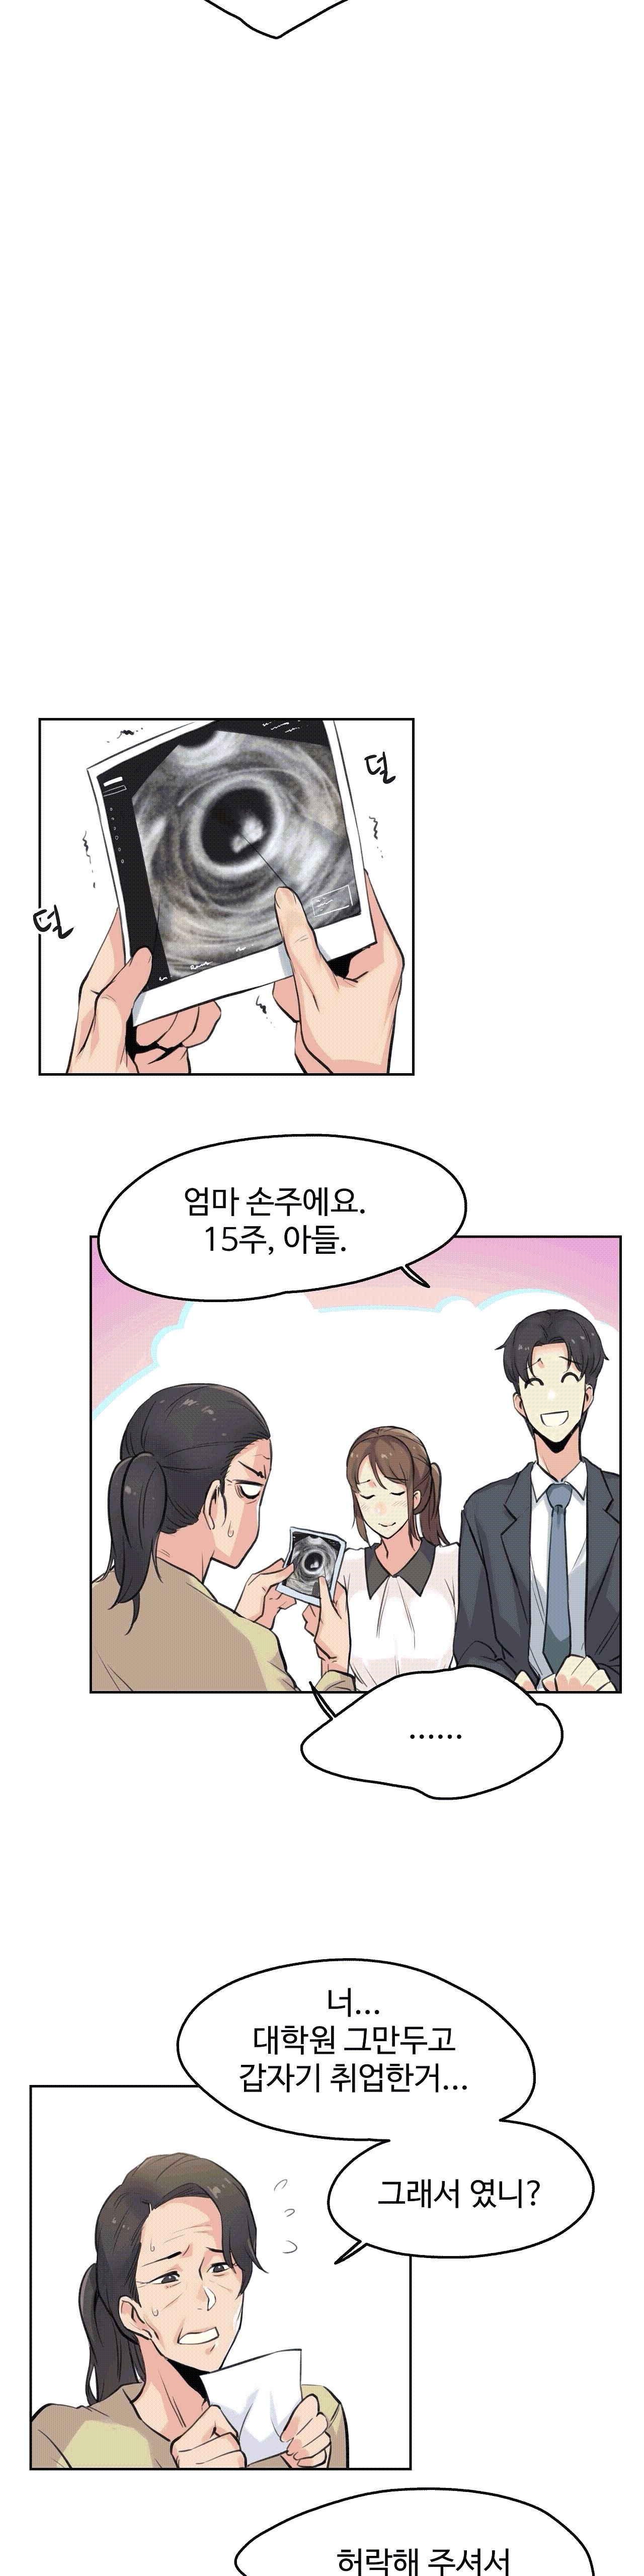 대리 부 | Surrogate Father 6 [Korean] Manhwa 23